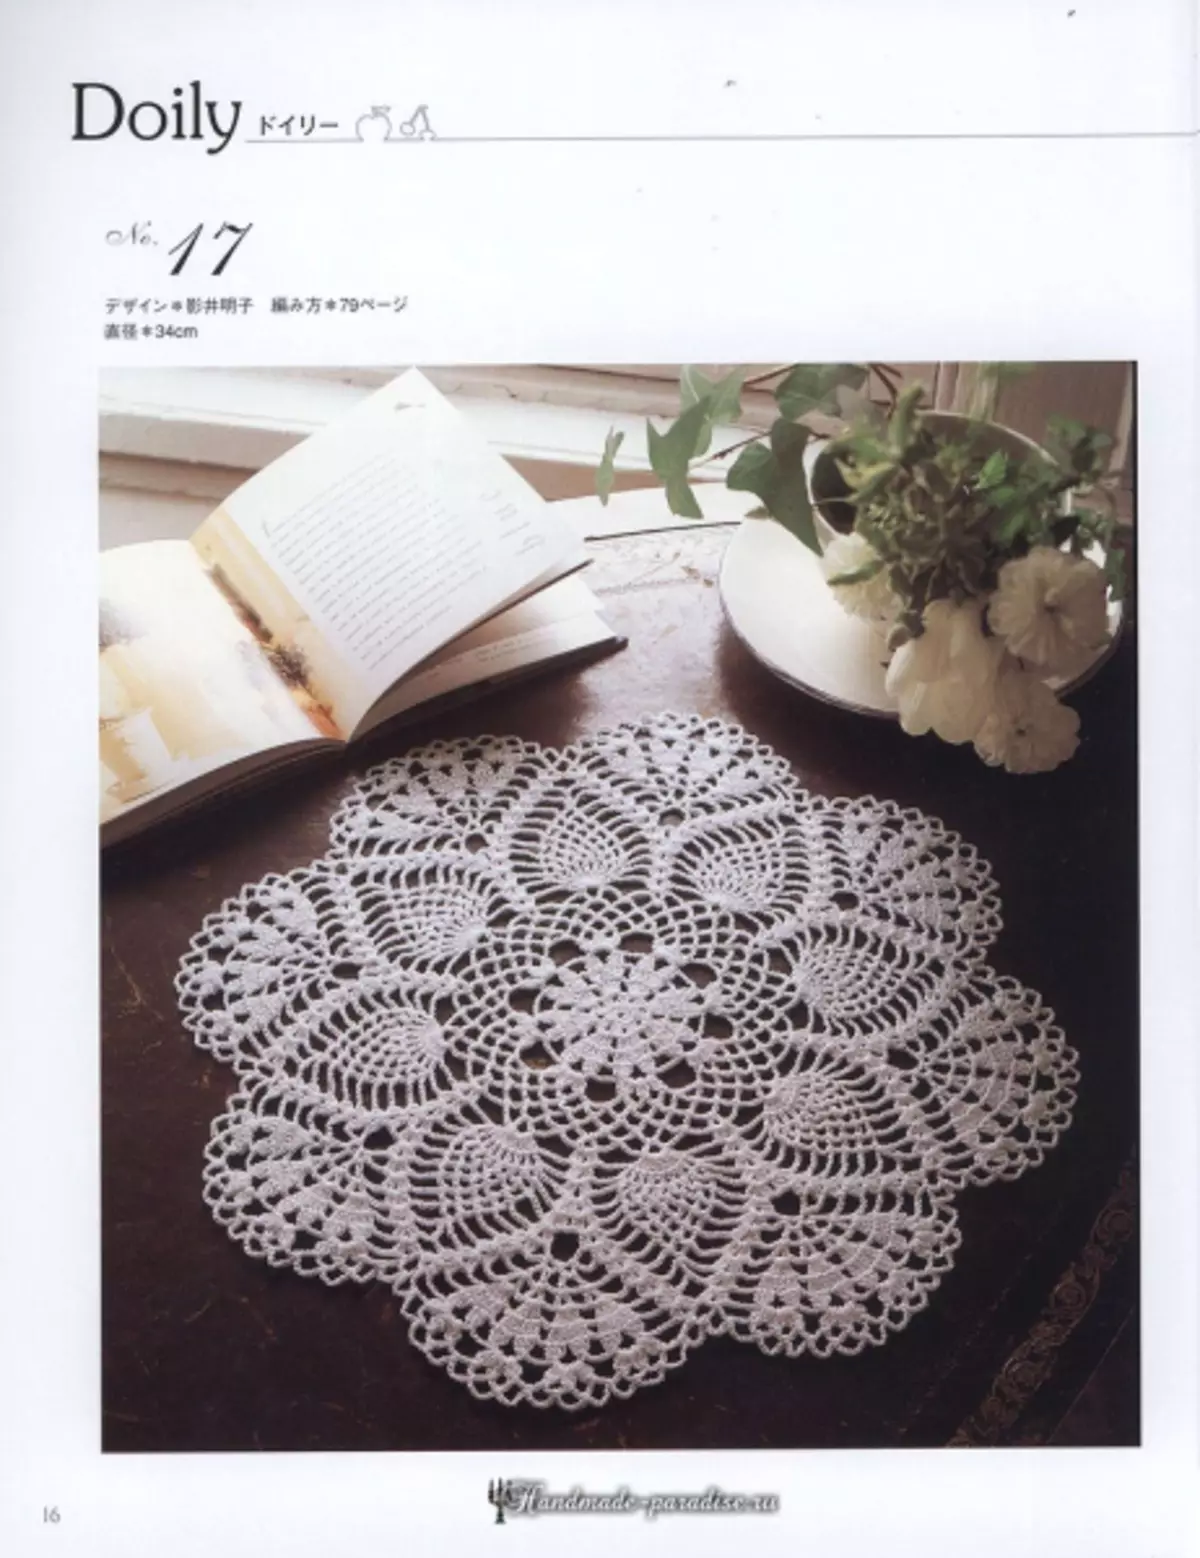 ಲಲಿತ Crochet ಲೇಸ್ 2019 ಮ್ಯಾಗಜೀನ್ - Napkins ಮತ್ತು Crochet ಮೇಜುಬಟ್ಟೆಗಳು